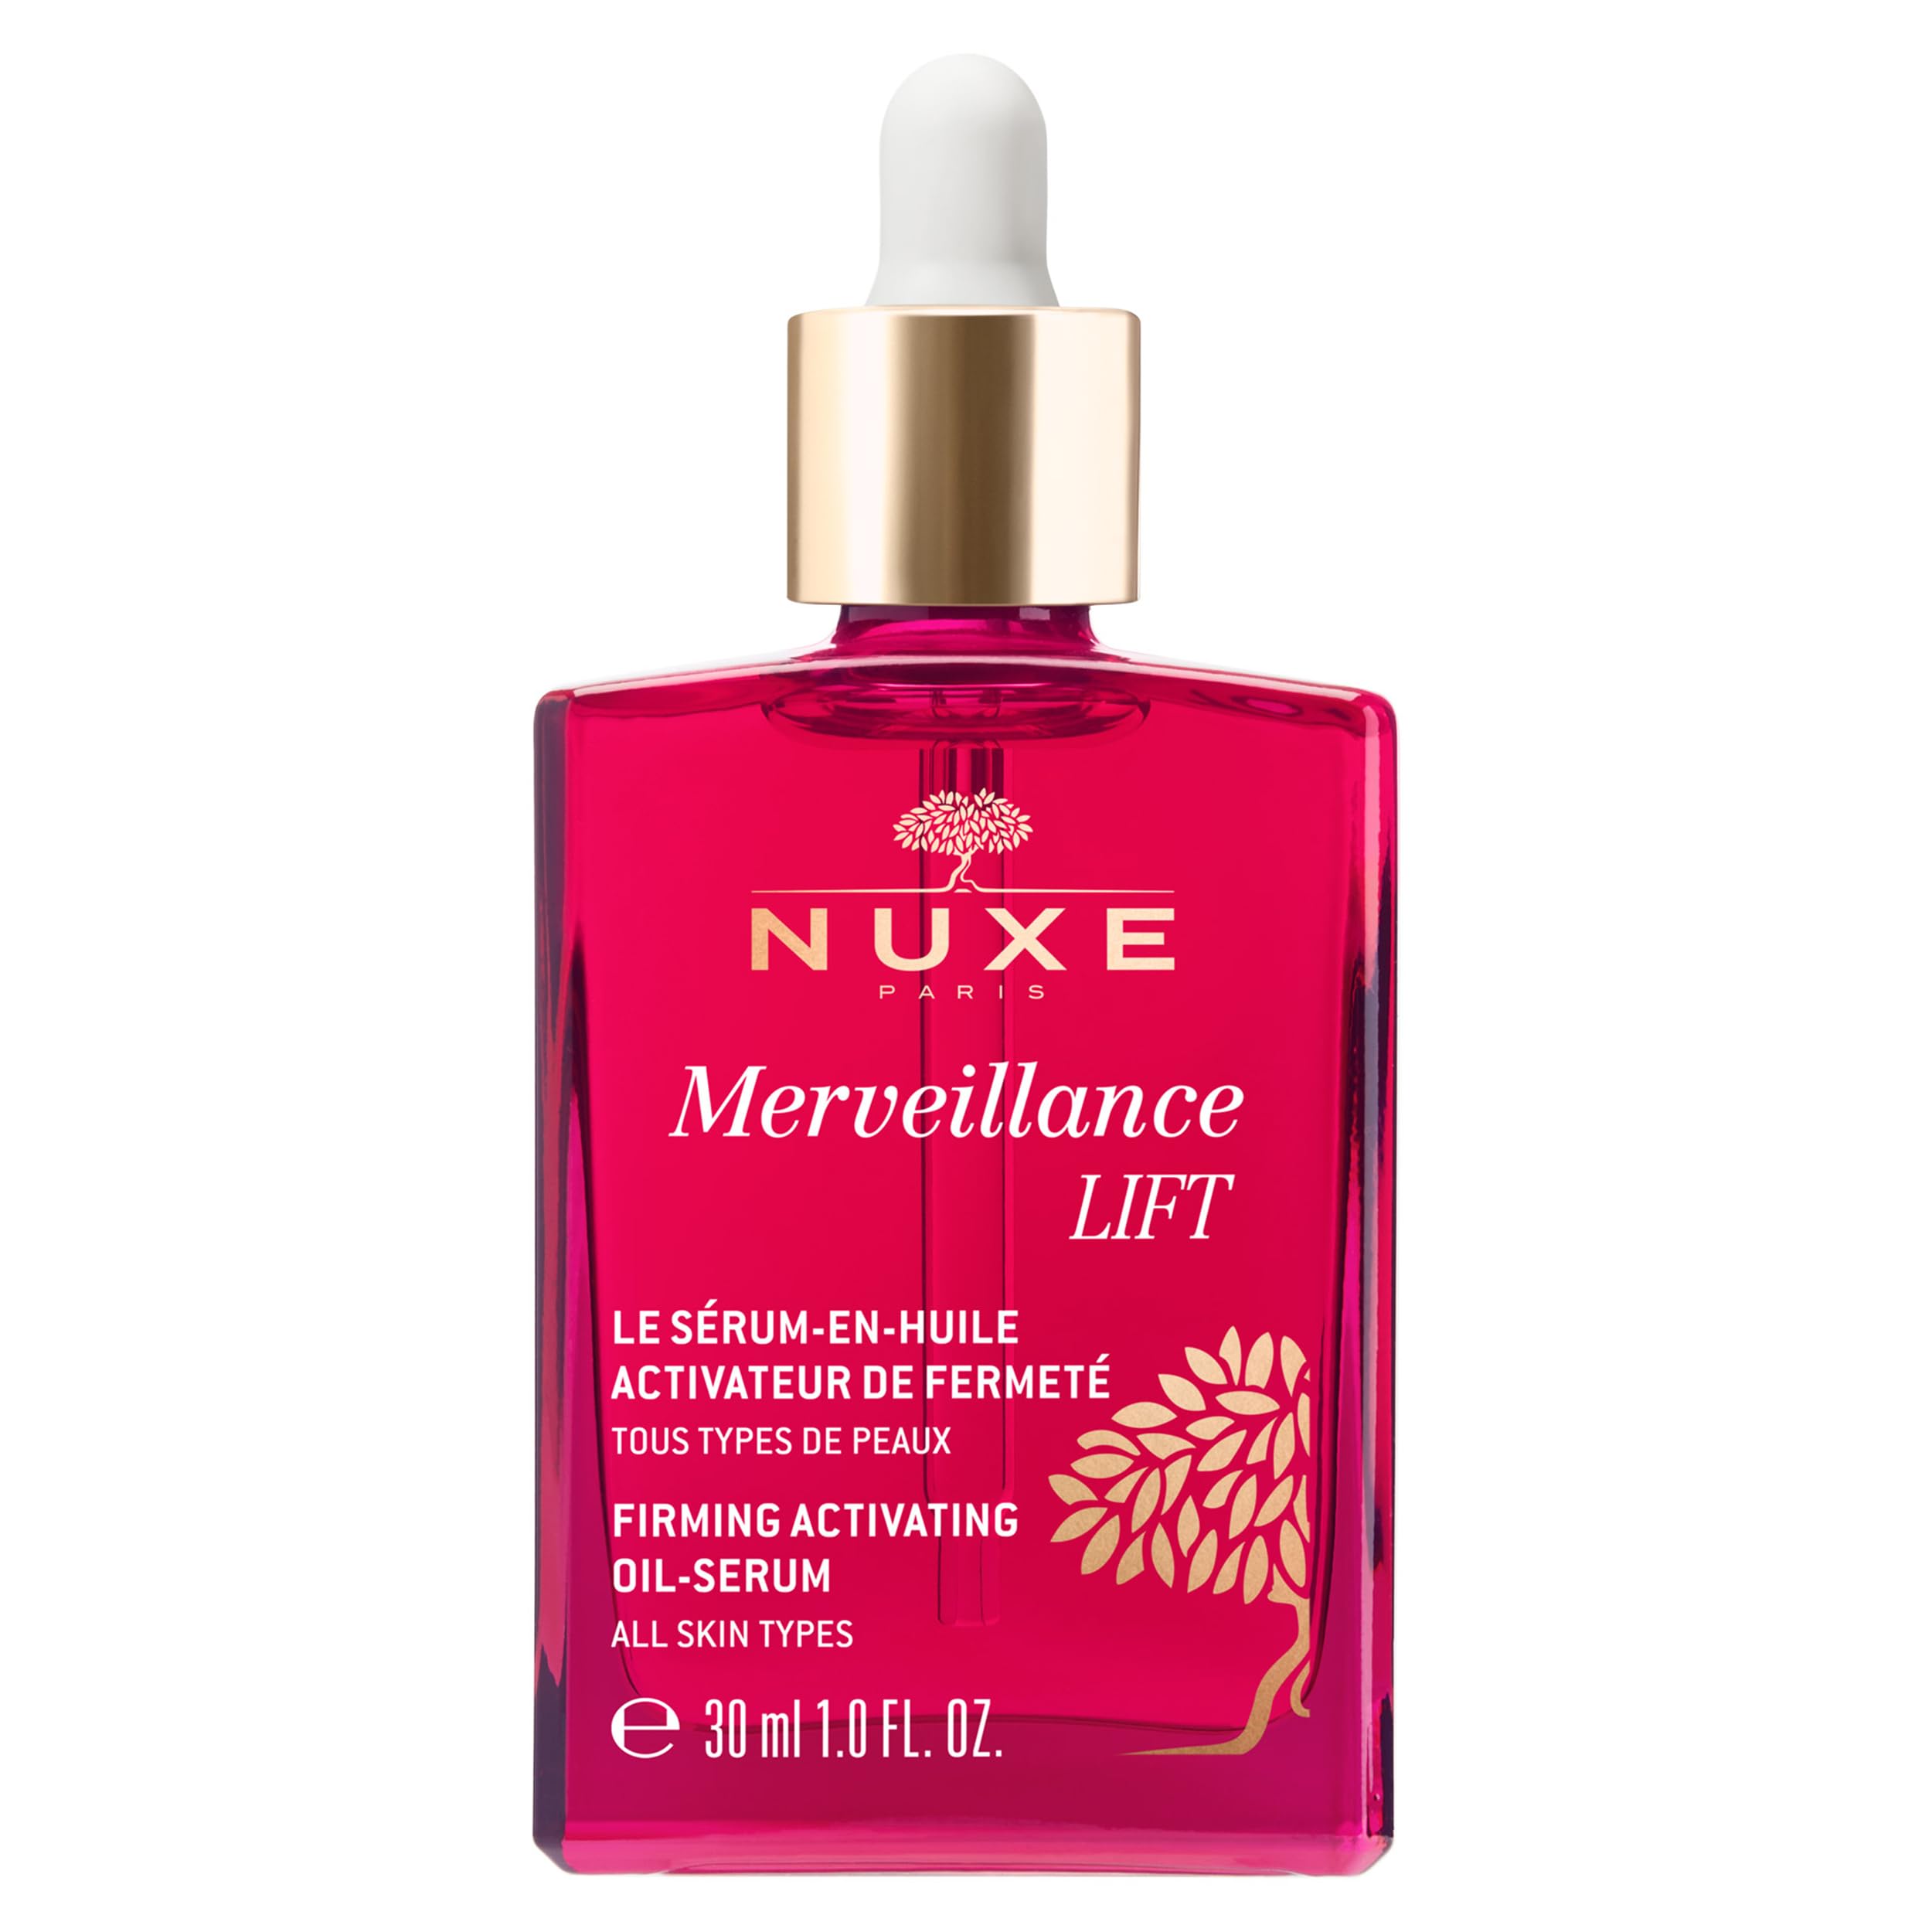 NUXE Merveillance Lift Firming Activating Oil-Serum, 30 ml, Glass